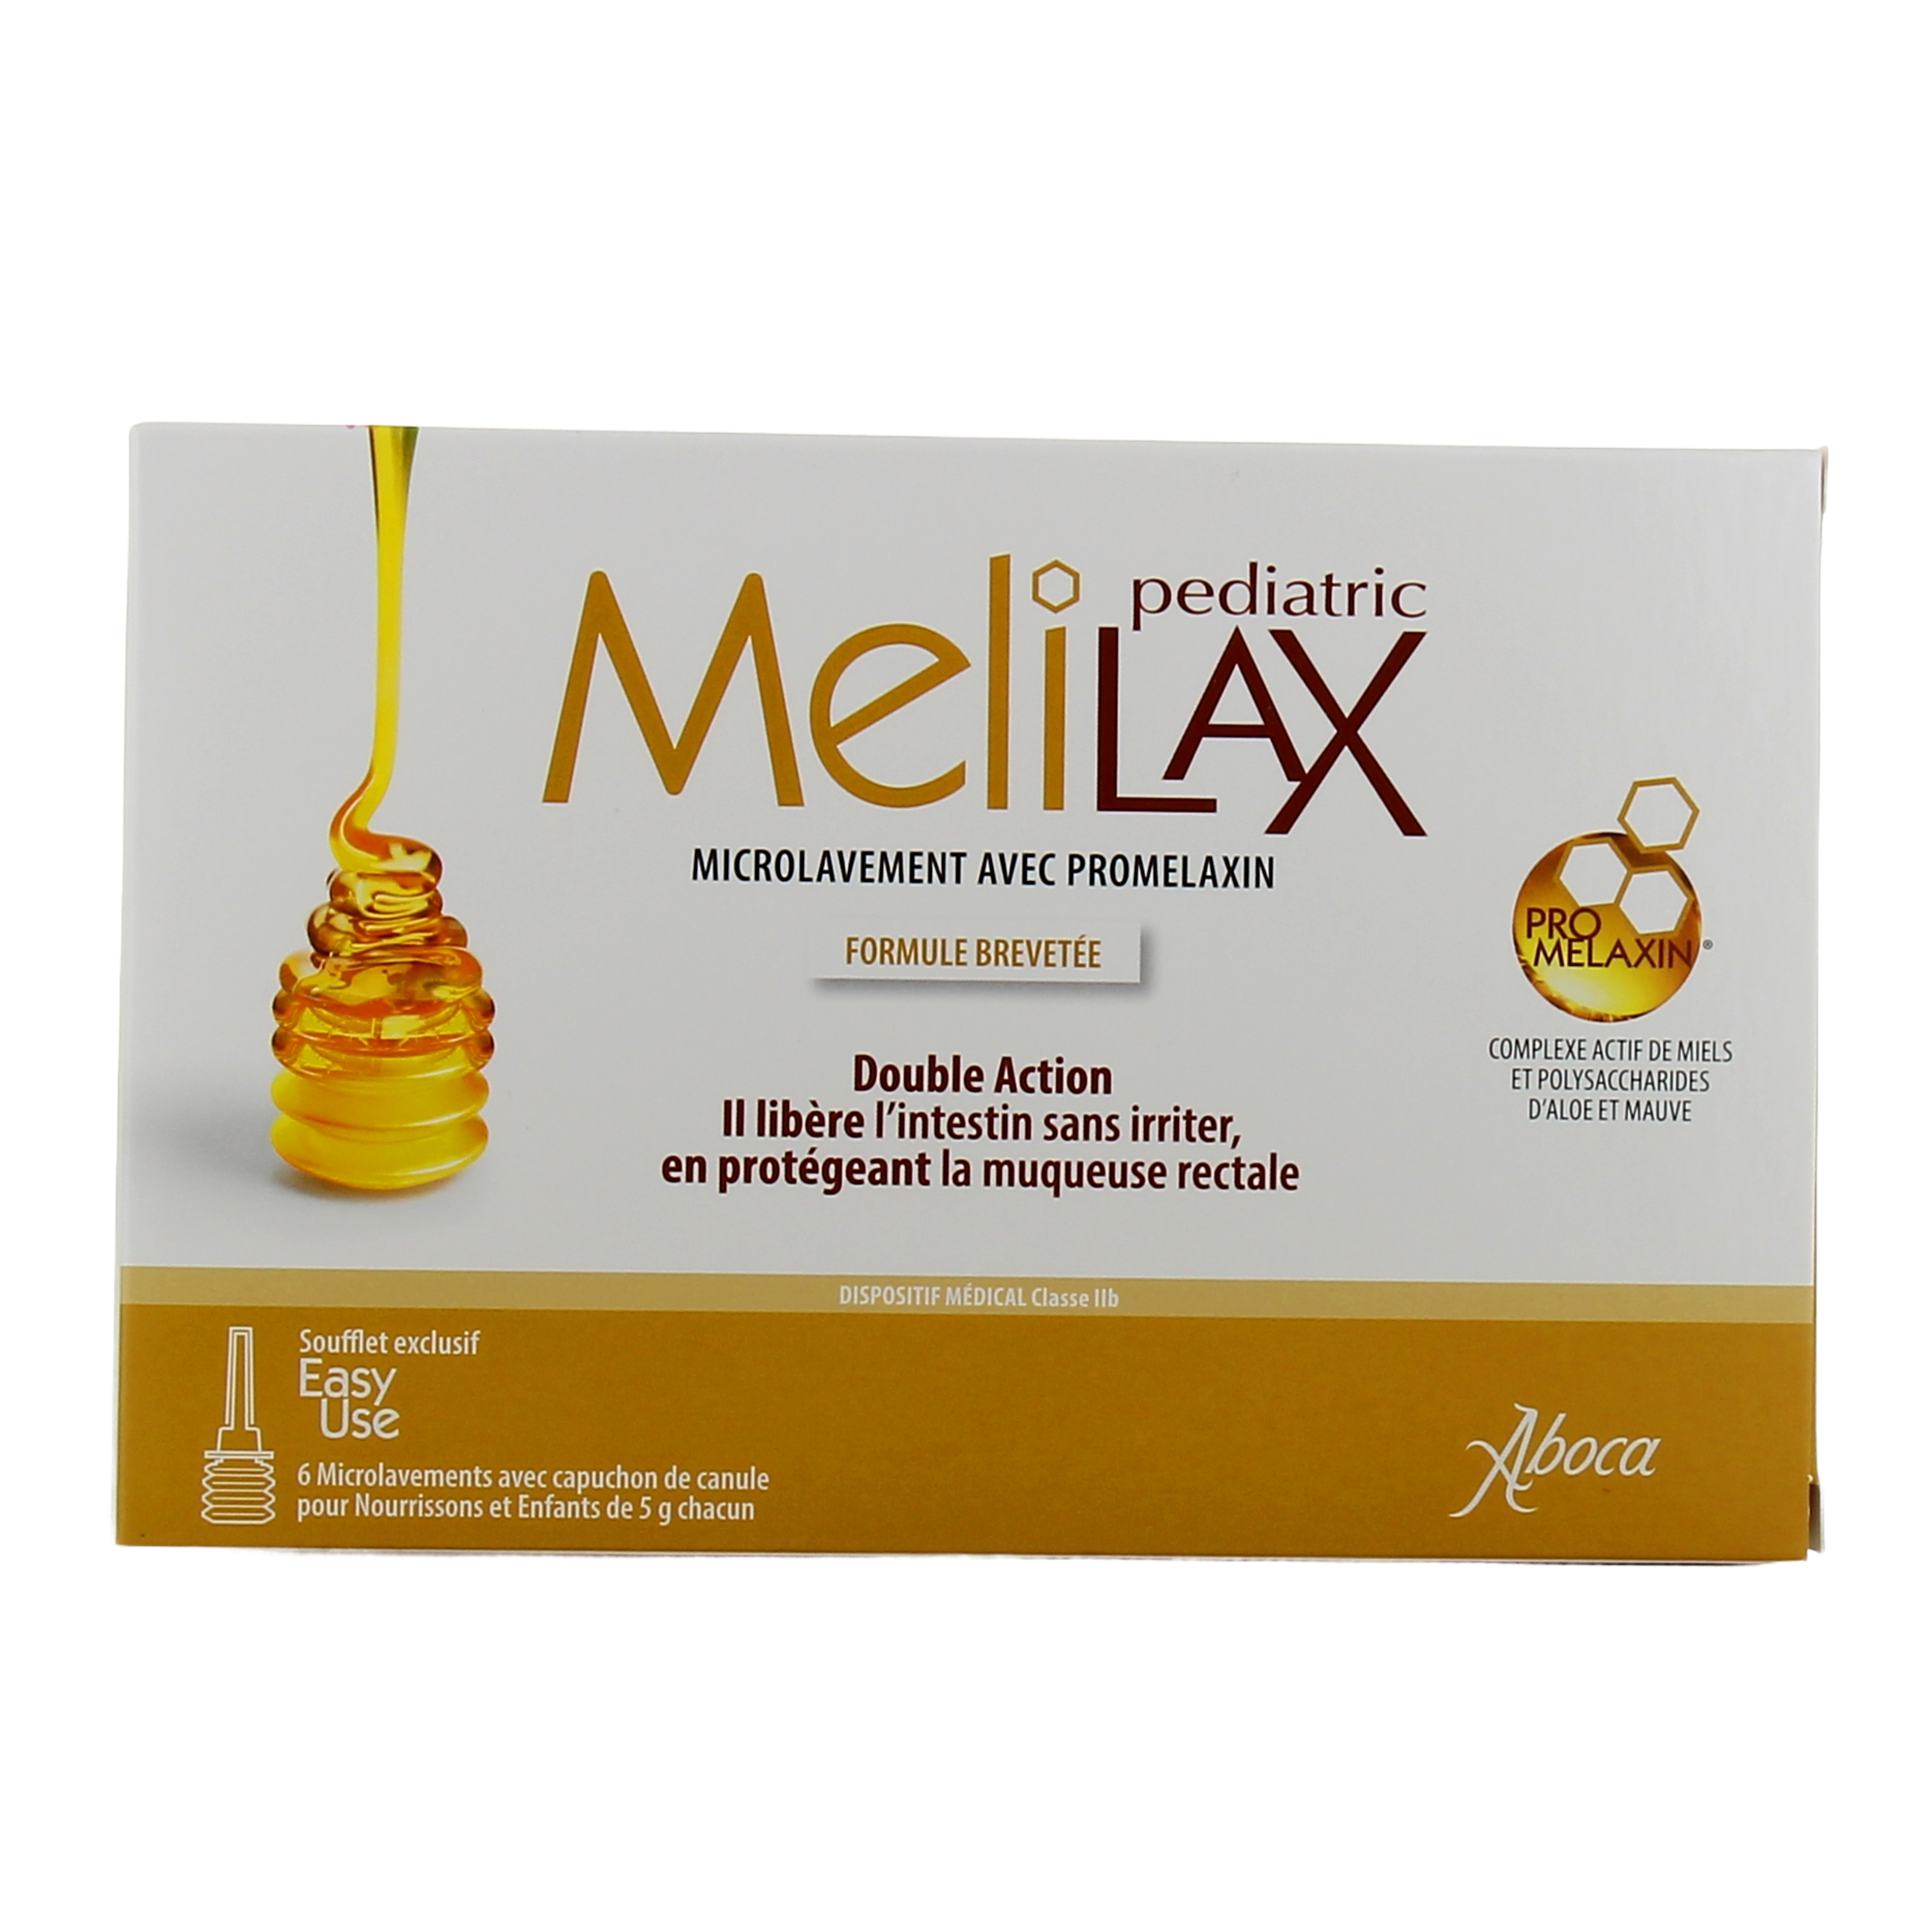 Melilax pediatric - Constipation - Enfants - 6 microlavements avec capuchon  canule de 5g